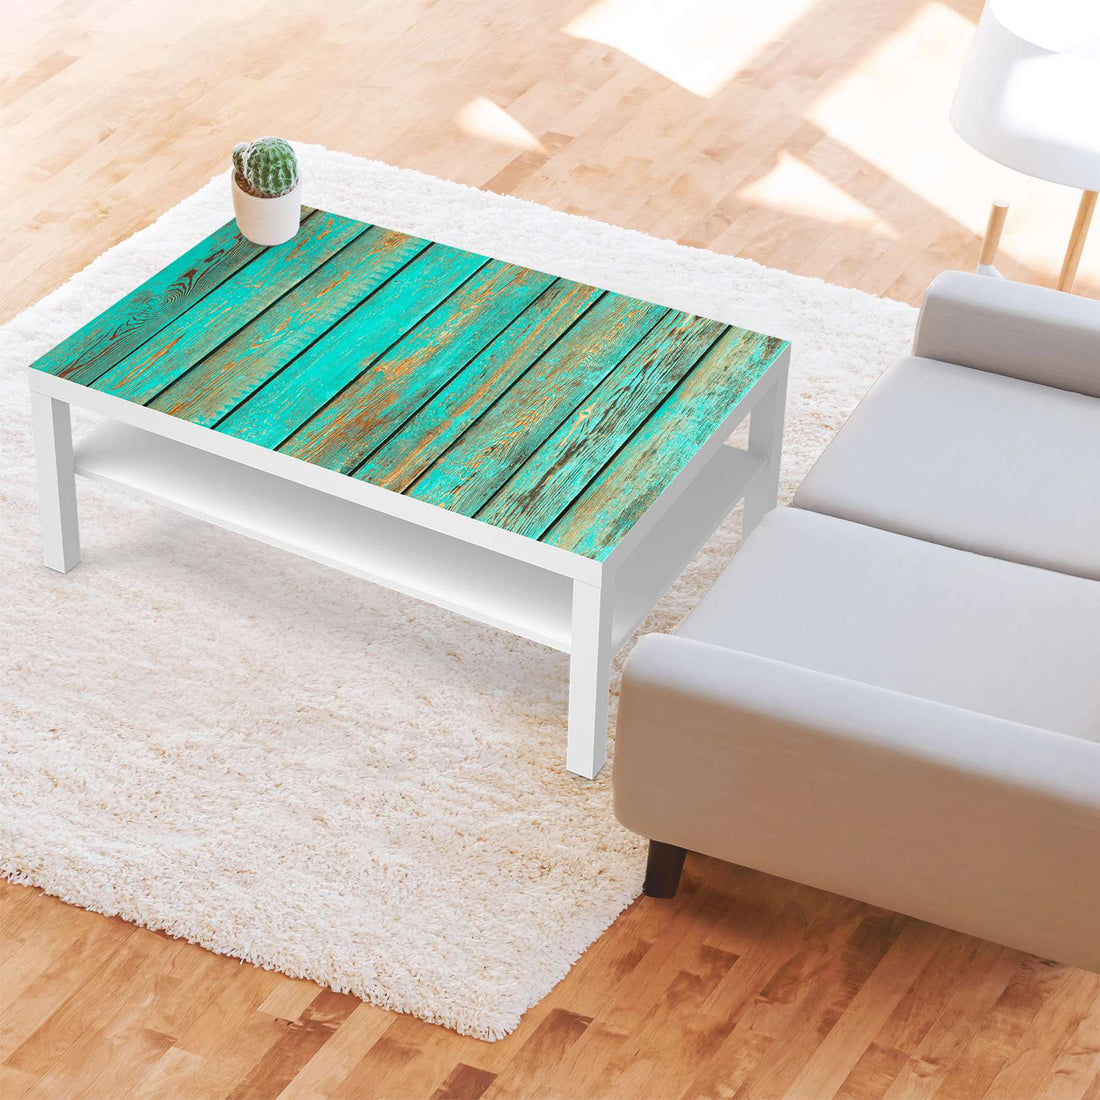 Klebefolie Wooden Aqua - IKEA Lack Tisch 118x78 cm - Wohnzimmer